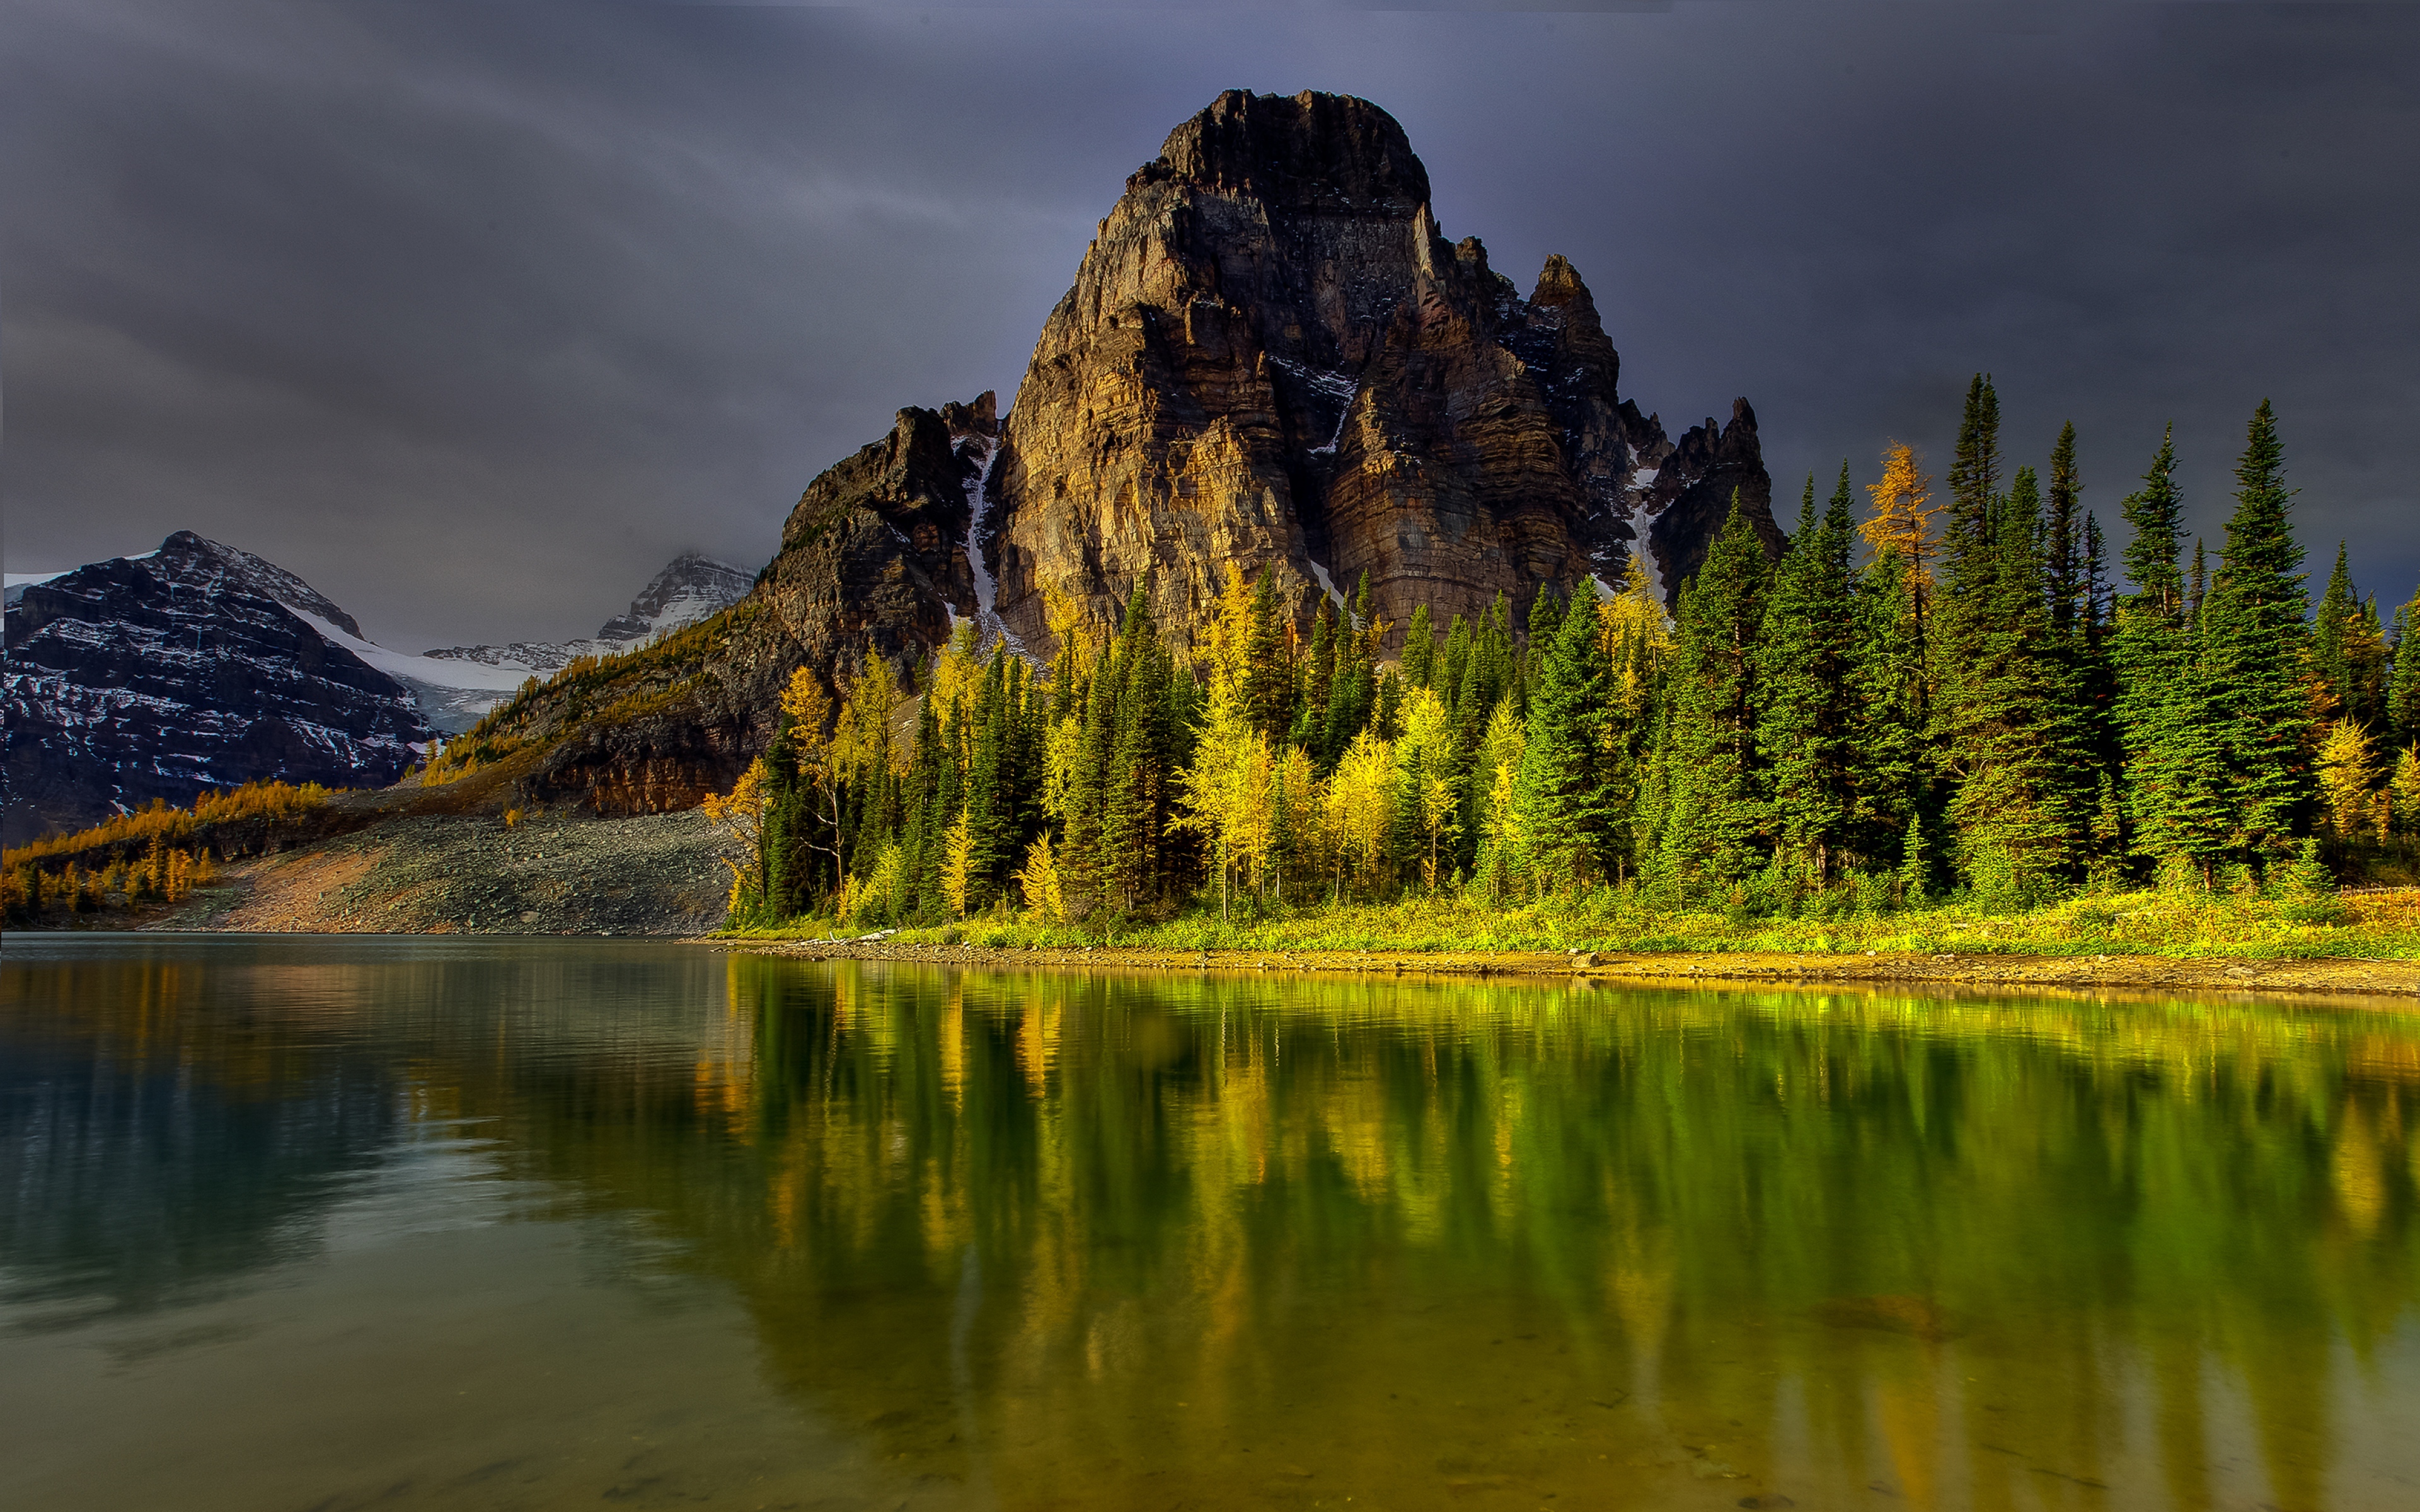 1280 1024 1280 960. Горы, озеро лес 1920 США. Природа Северной Америки. Ергаки. Красивый пейзаж.